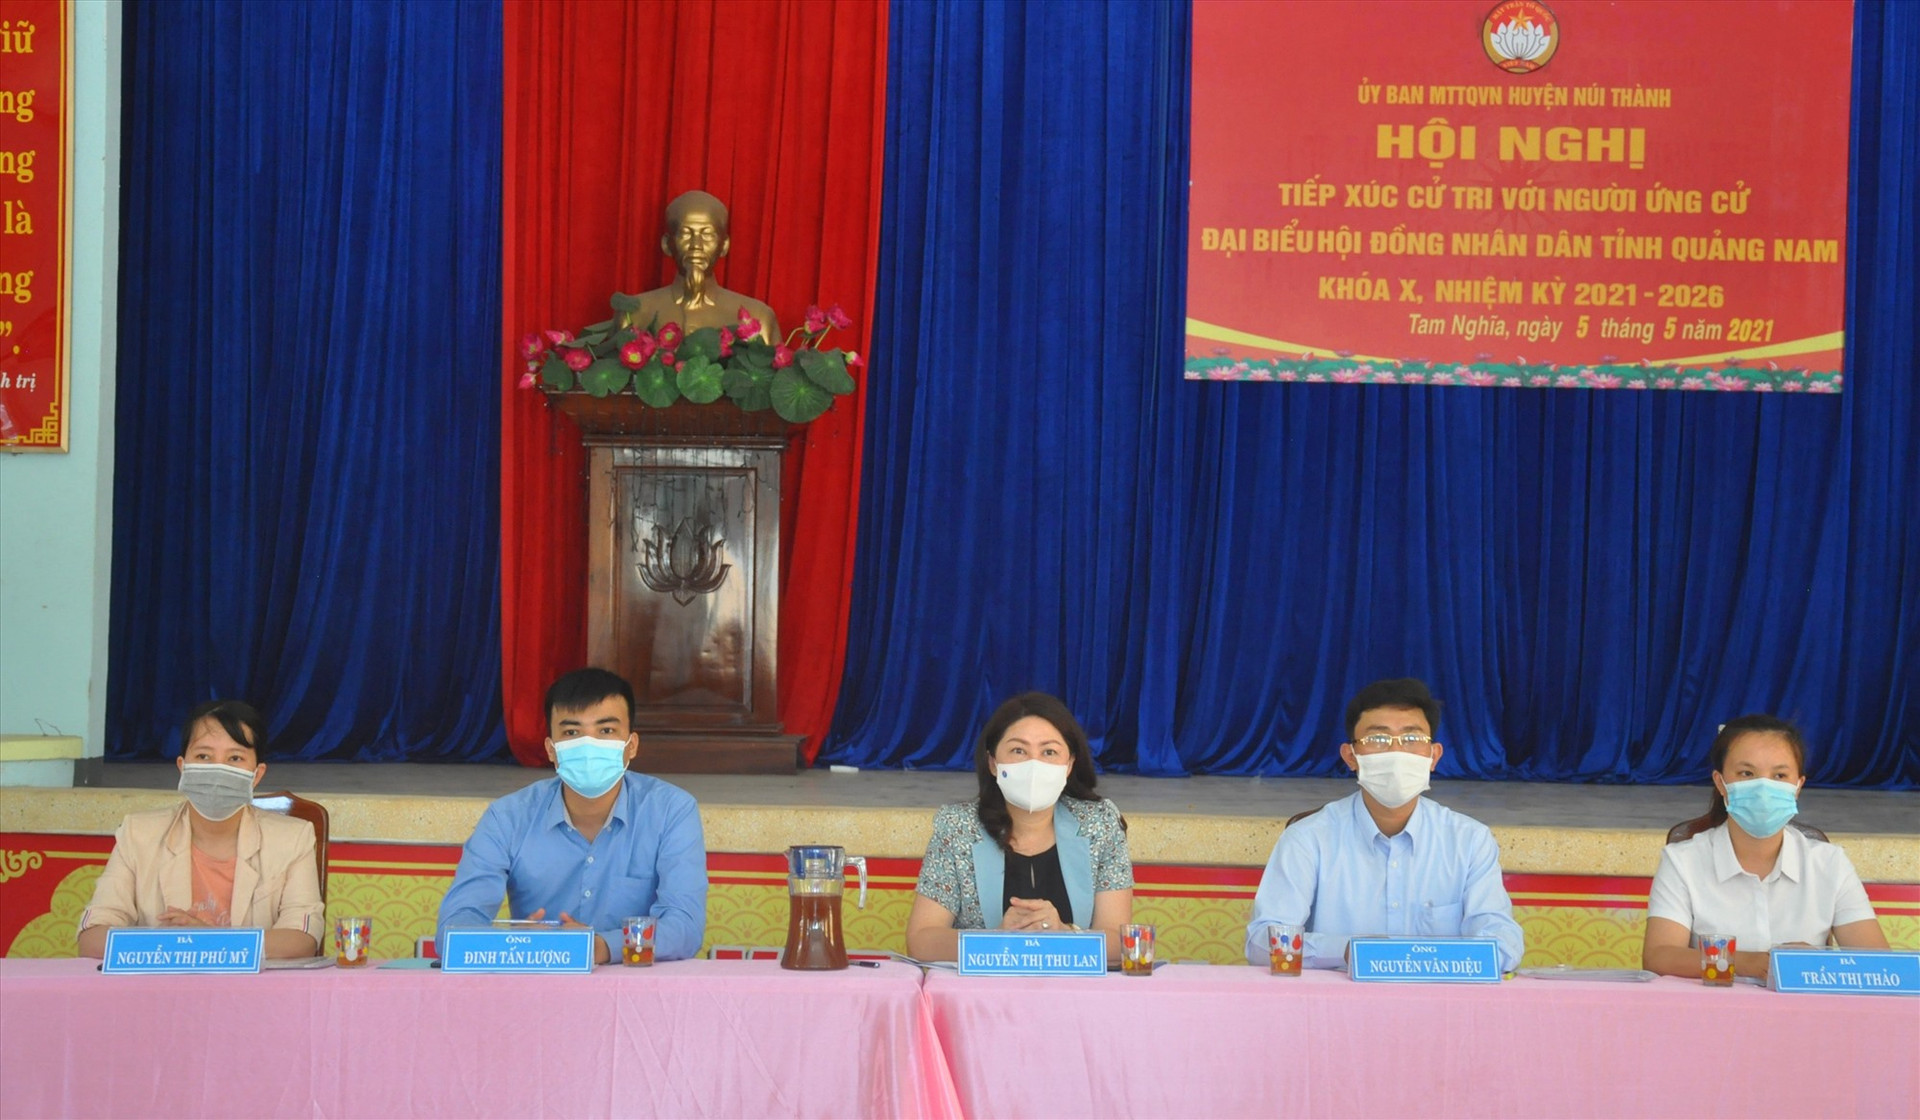 5 ứng cử viên đại biểu HĐND tỉnh đơn vị bầu cử số 20 gặp gỡ, trao đổi với cử tri xã Tam Nghĩa chiều ngày 5.5. Vào